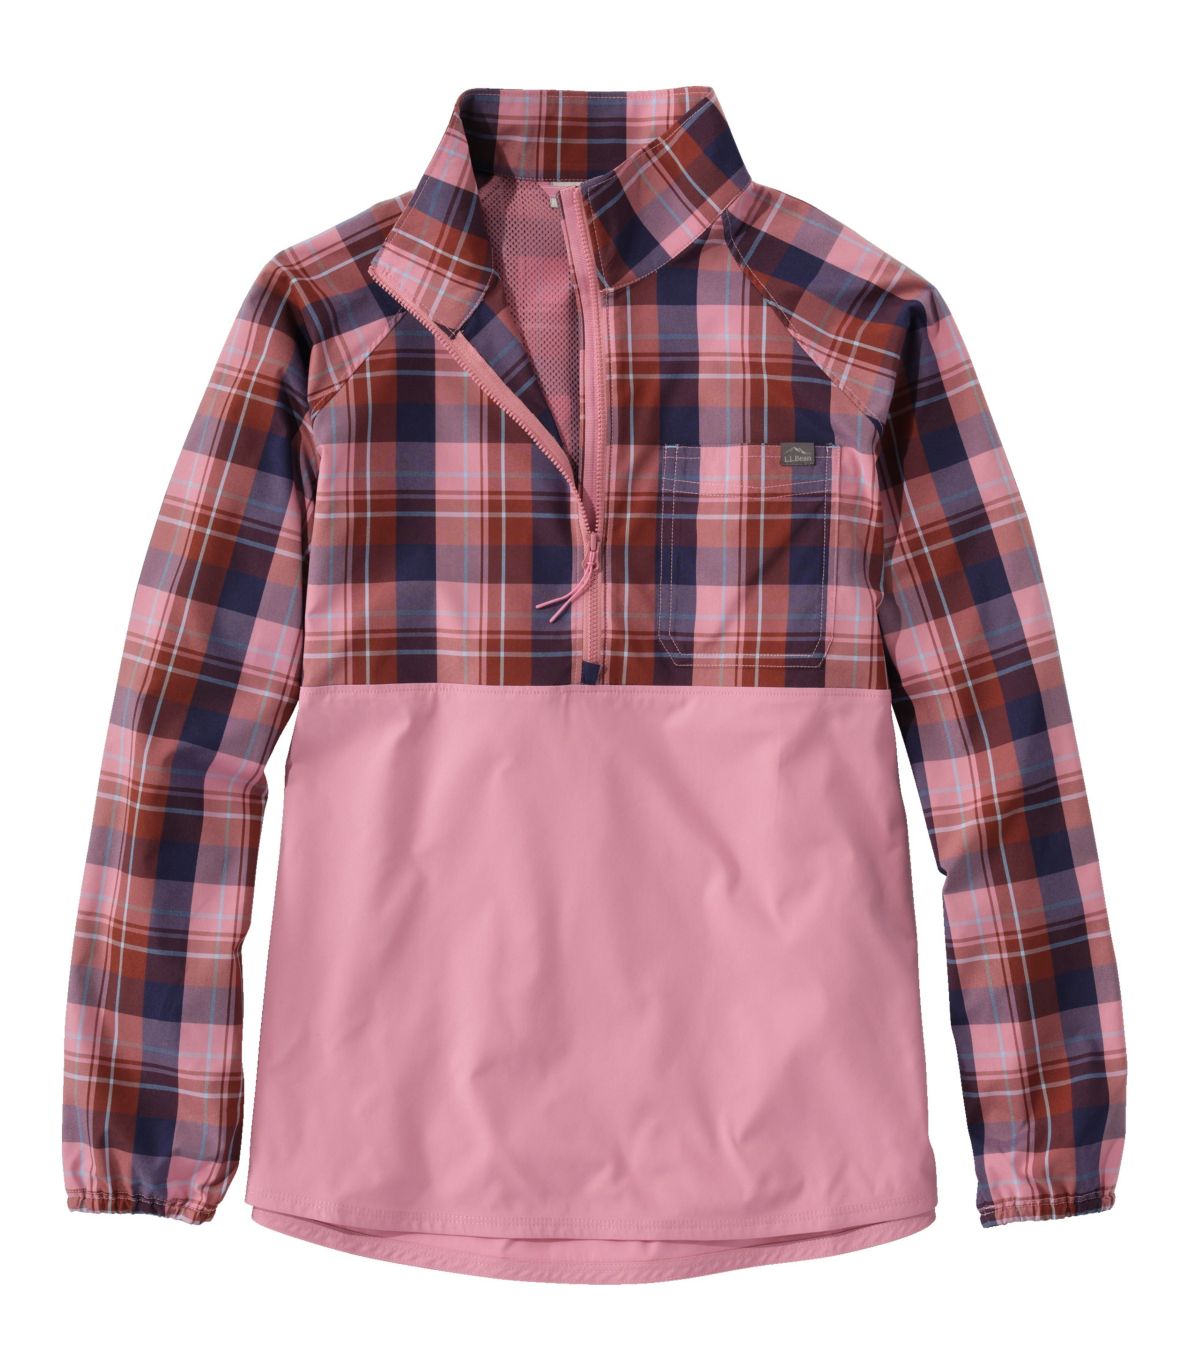 Women's Everyday SunSmart® Woven Shirt, Quarter-Zip Pullover Colorblock